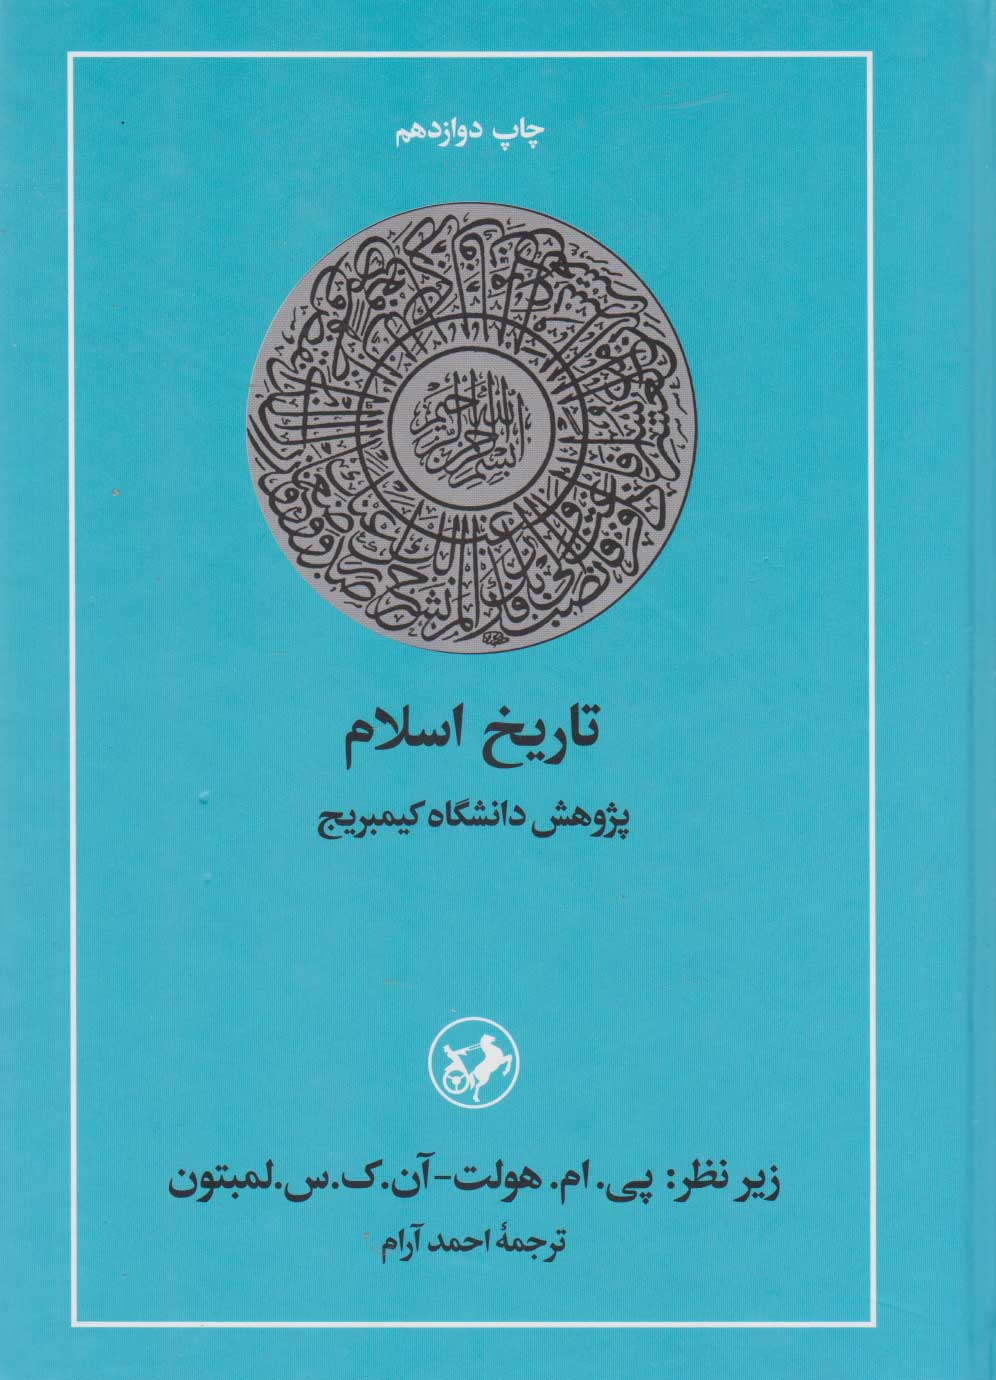  کتاب تاریخ اسلام کمبریج